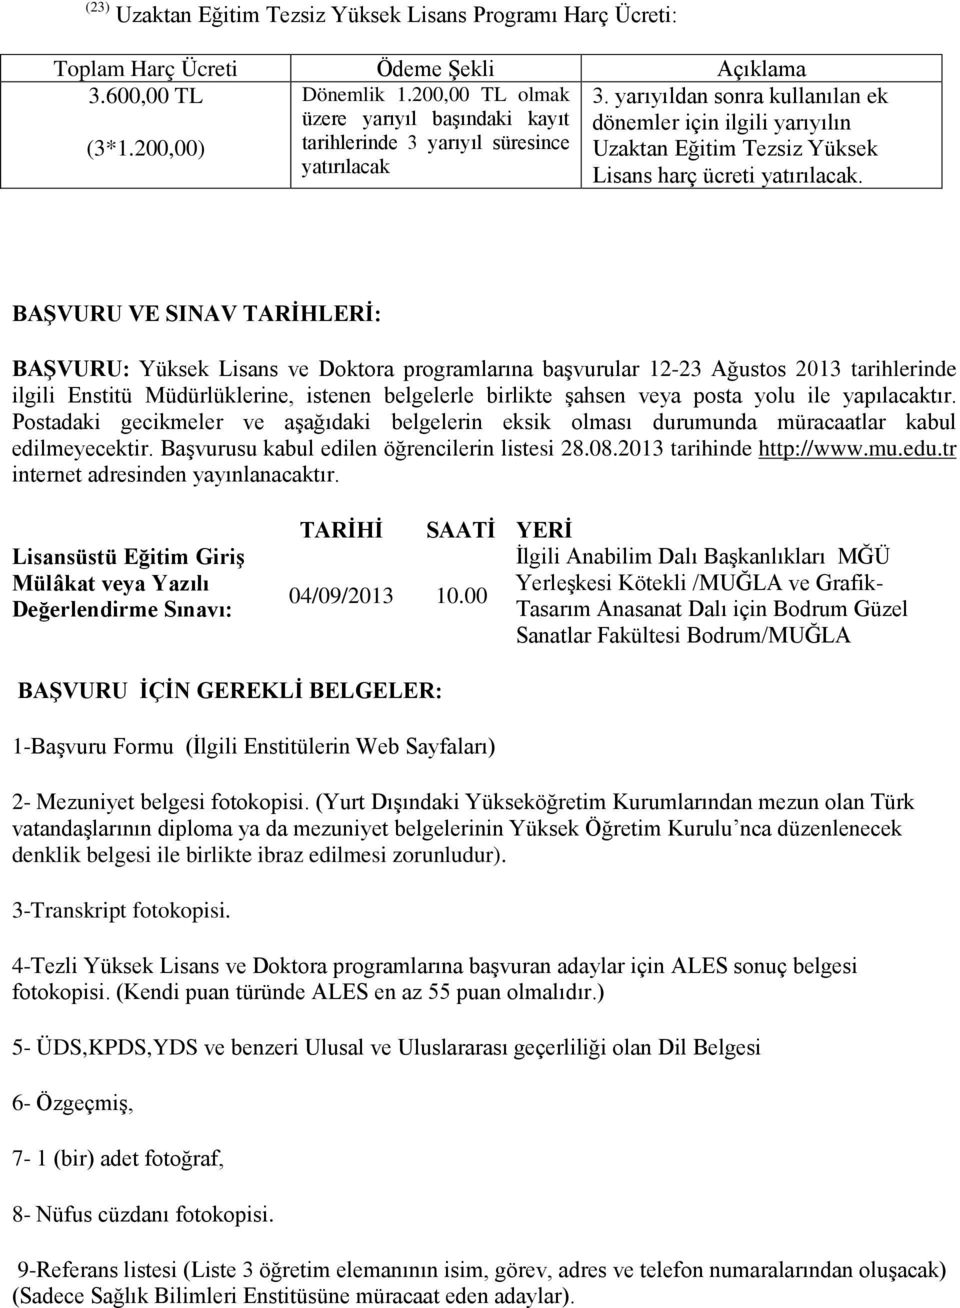 BAŞVURU VE SINAV TARİHLERİ: BAŞVURU: Yüksek Lisans ve Doktora programlarına başvurular 12-23 Ağustos 2013 tarihlerinde ilgili Enstitü Müdürlüklerine, istenen belgelerle birlikte şahsen veya posta